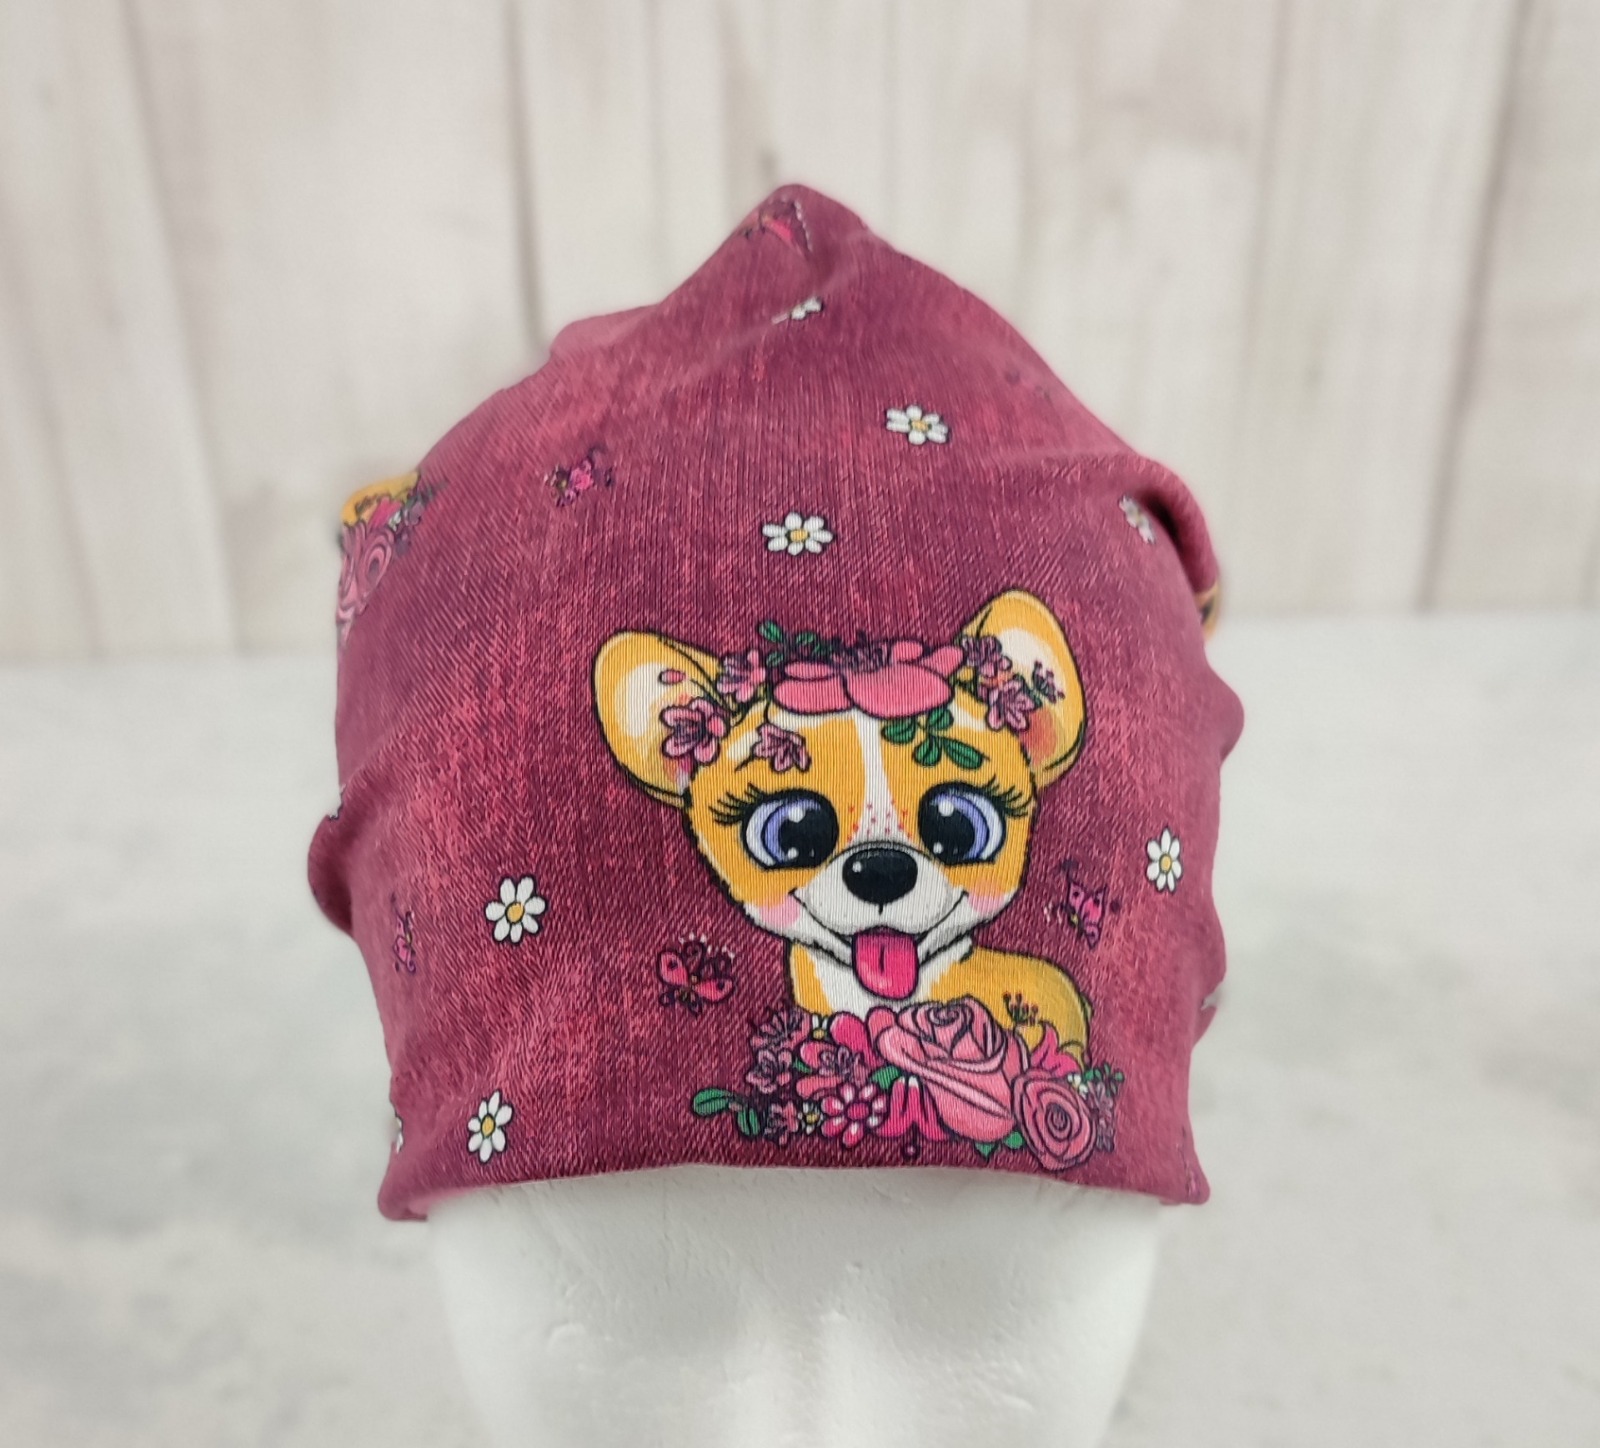 Beanie Mädchen Chihuahuas - Kindermütze aus Jersey in beere und pink mit Hunden und Blumen Größe ca 48 - 54 cm Kopfumfang 2